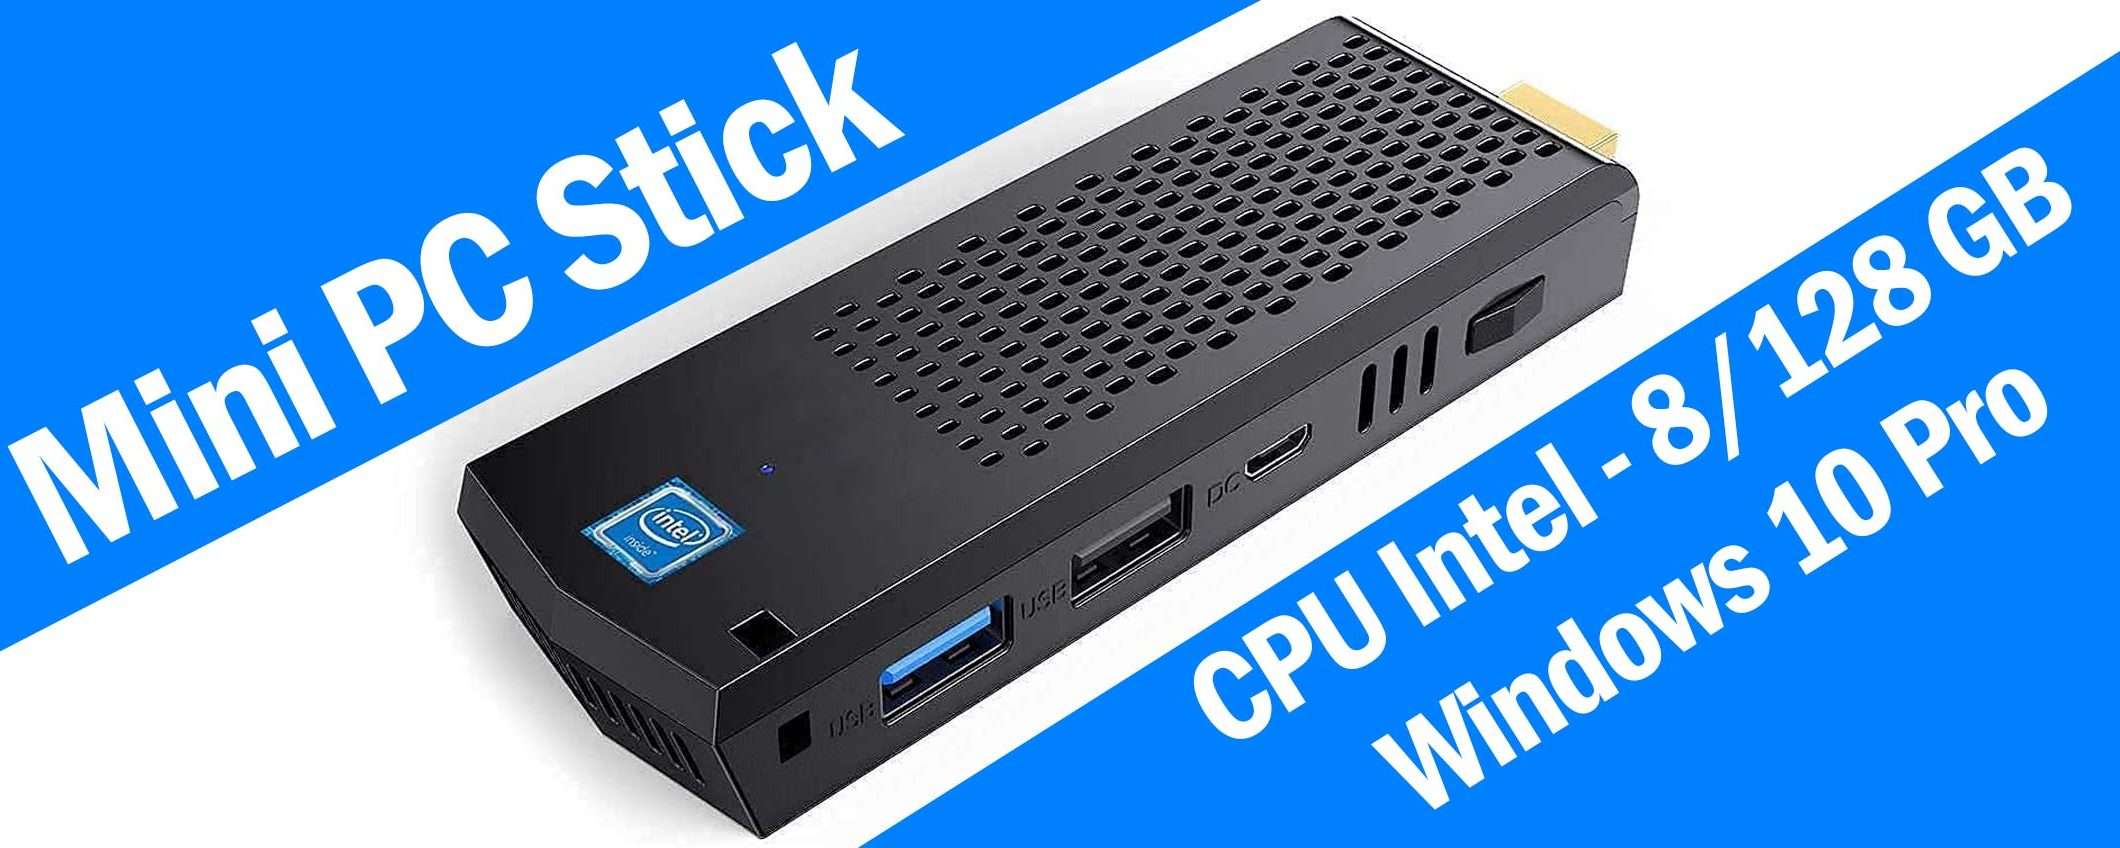 Mini PC Stick (Intel, 8/128GB) al prezzo minimo